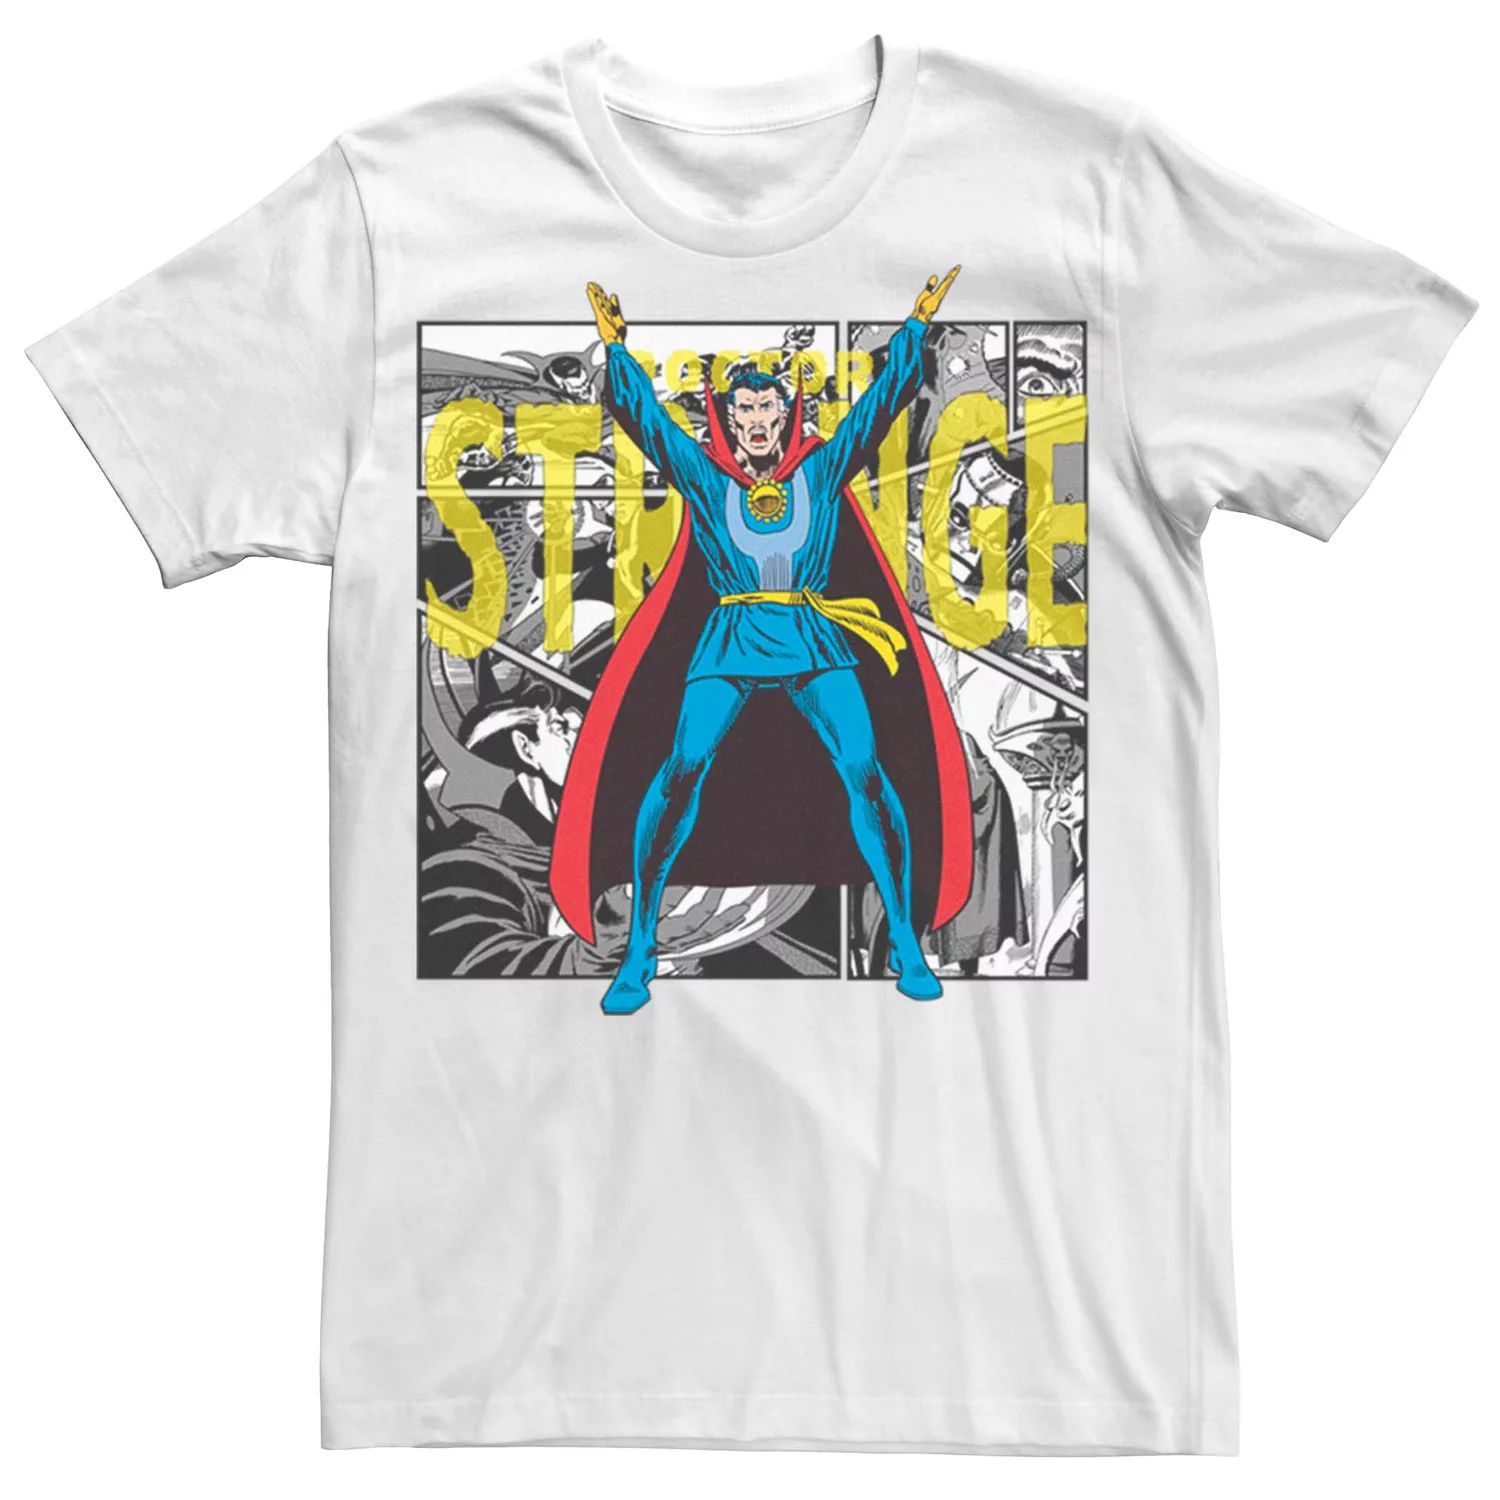 Мужская футболка с плакатом «Доктор Стрэндж» в стиле ретро в стиле Marvel Licensed Character